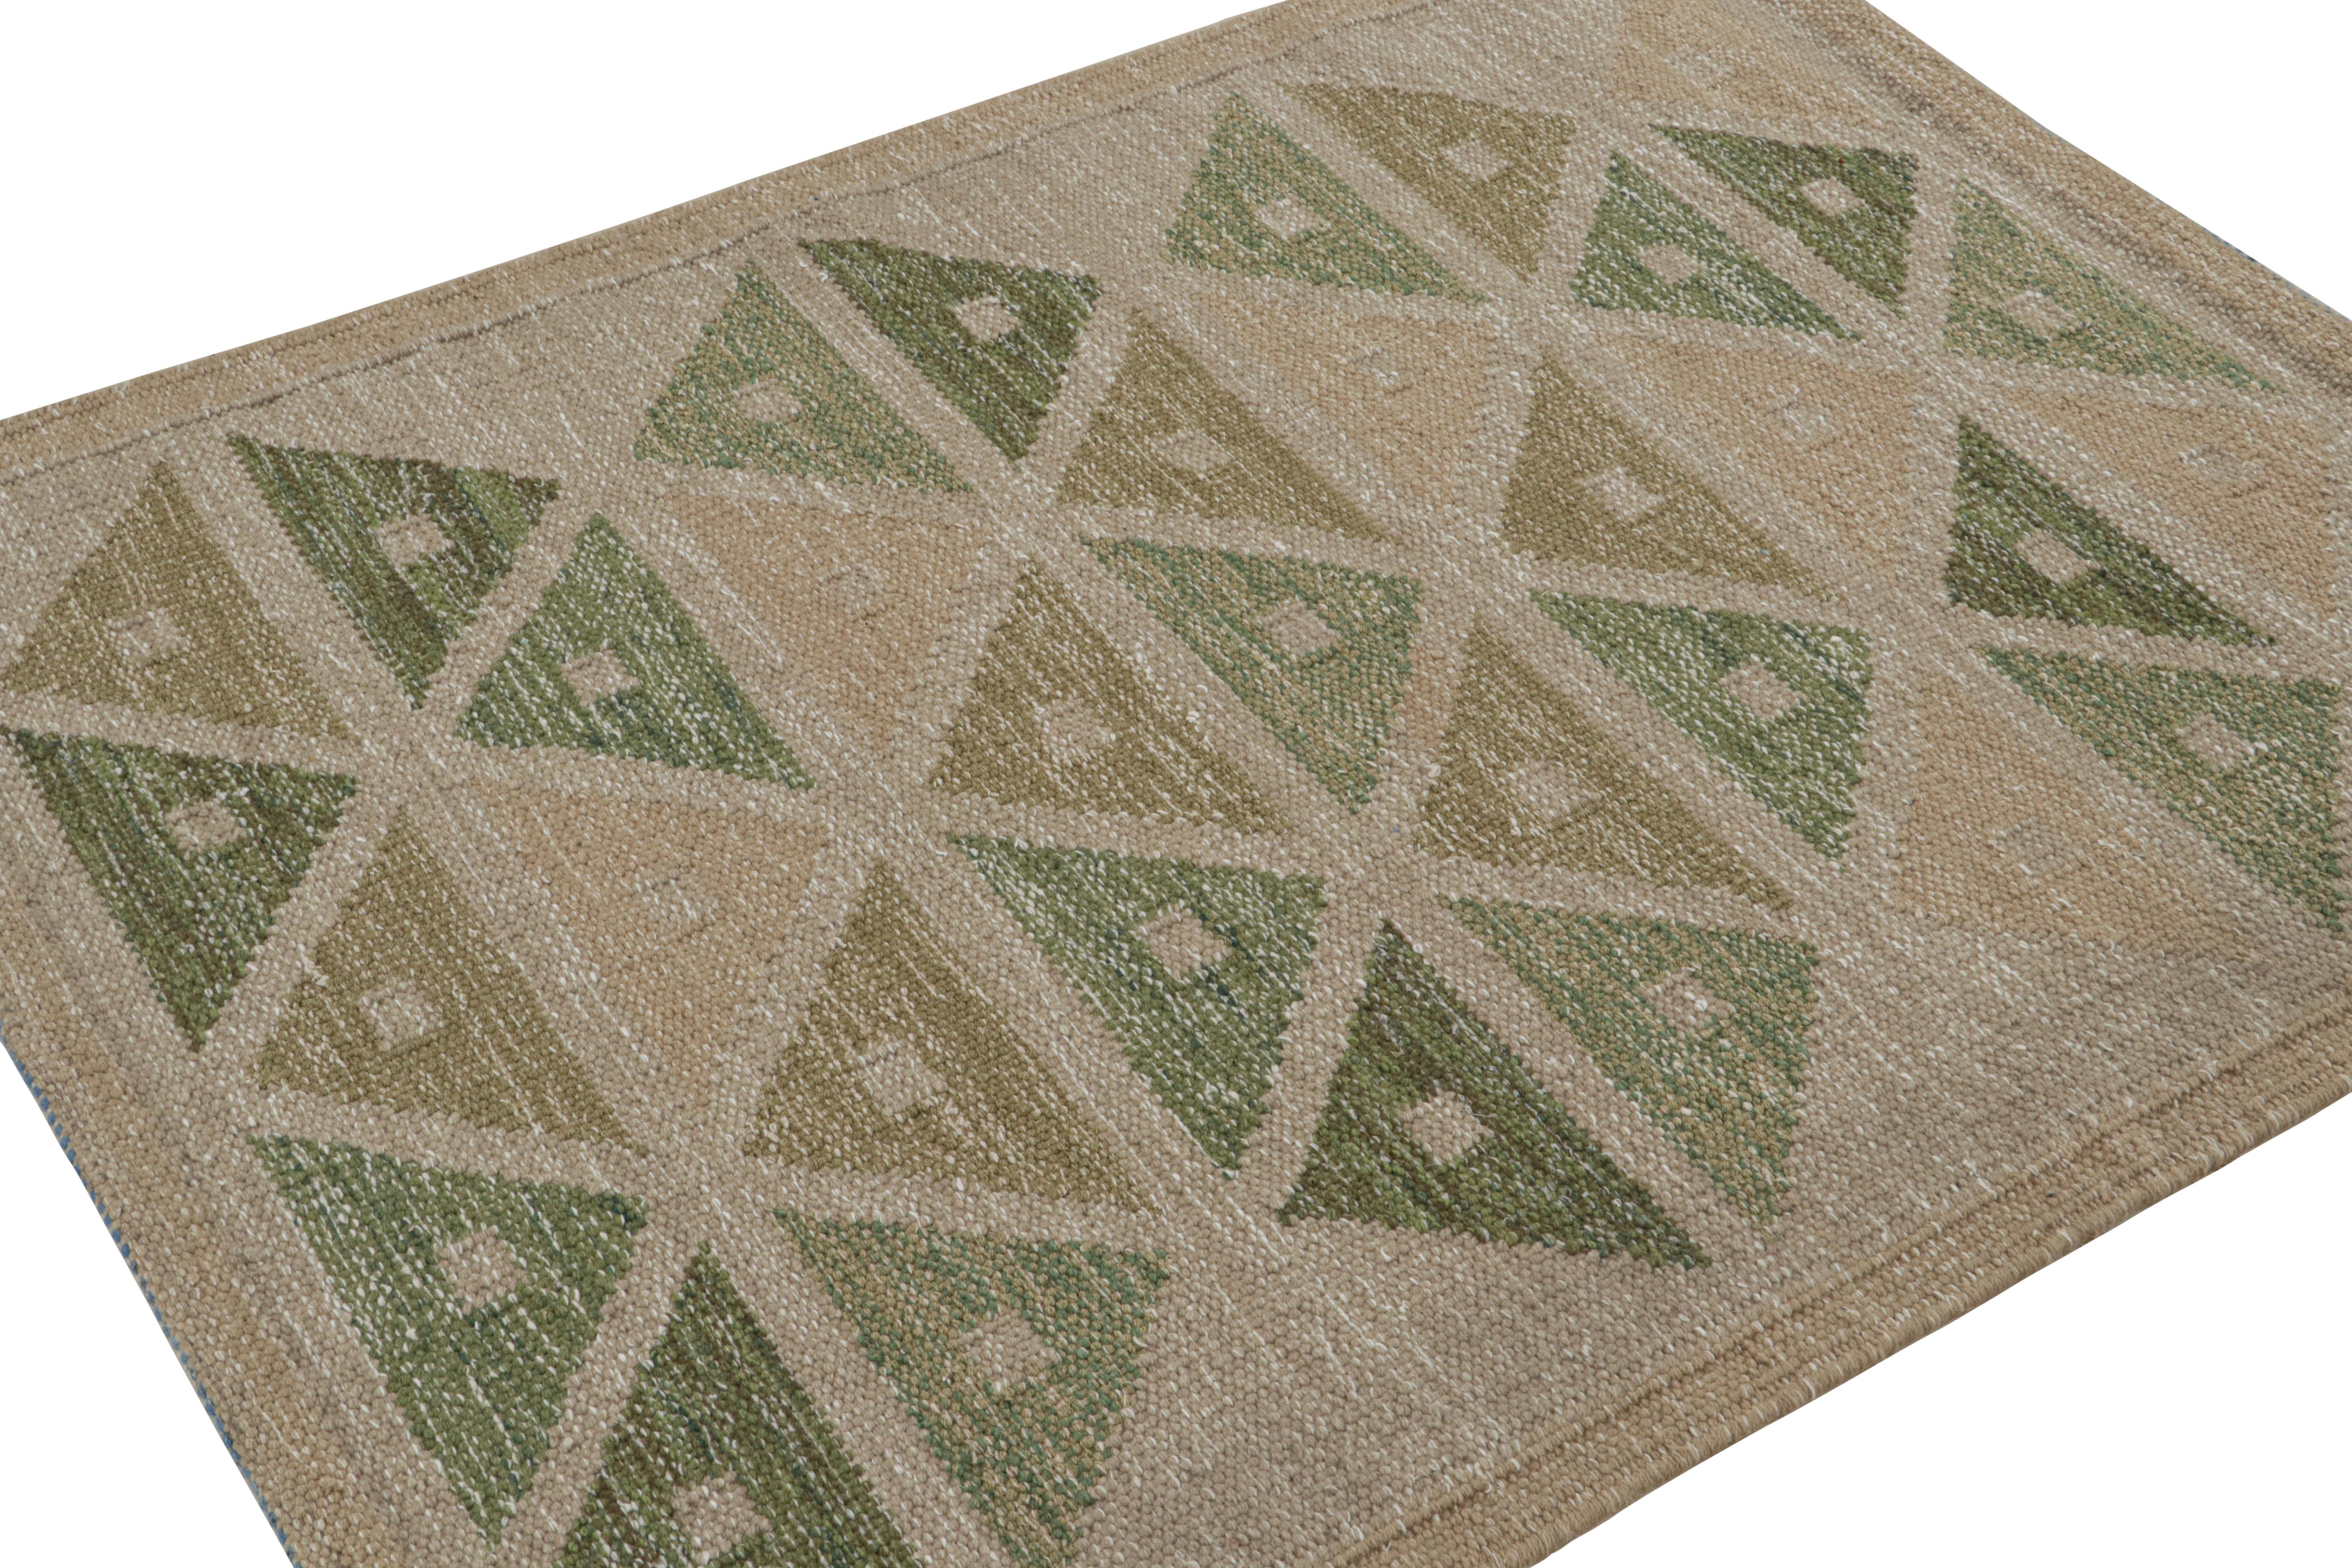 Dieser 4x5-Kilim-Teppich stammt aus der Flachgewebelinie der skandinavischen Teppichkollektion von Rug & Kilim. Das aus Wolle, Baumwolle und natürlichen Garnen handgewebte Design ist eine moderne Interpretation der Teppiche Rollakan und Rya im